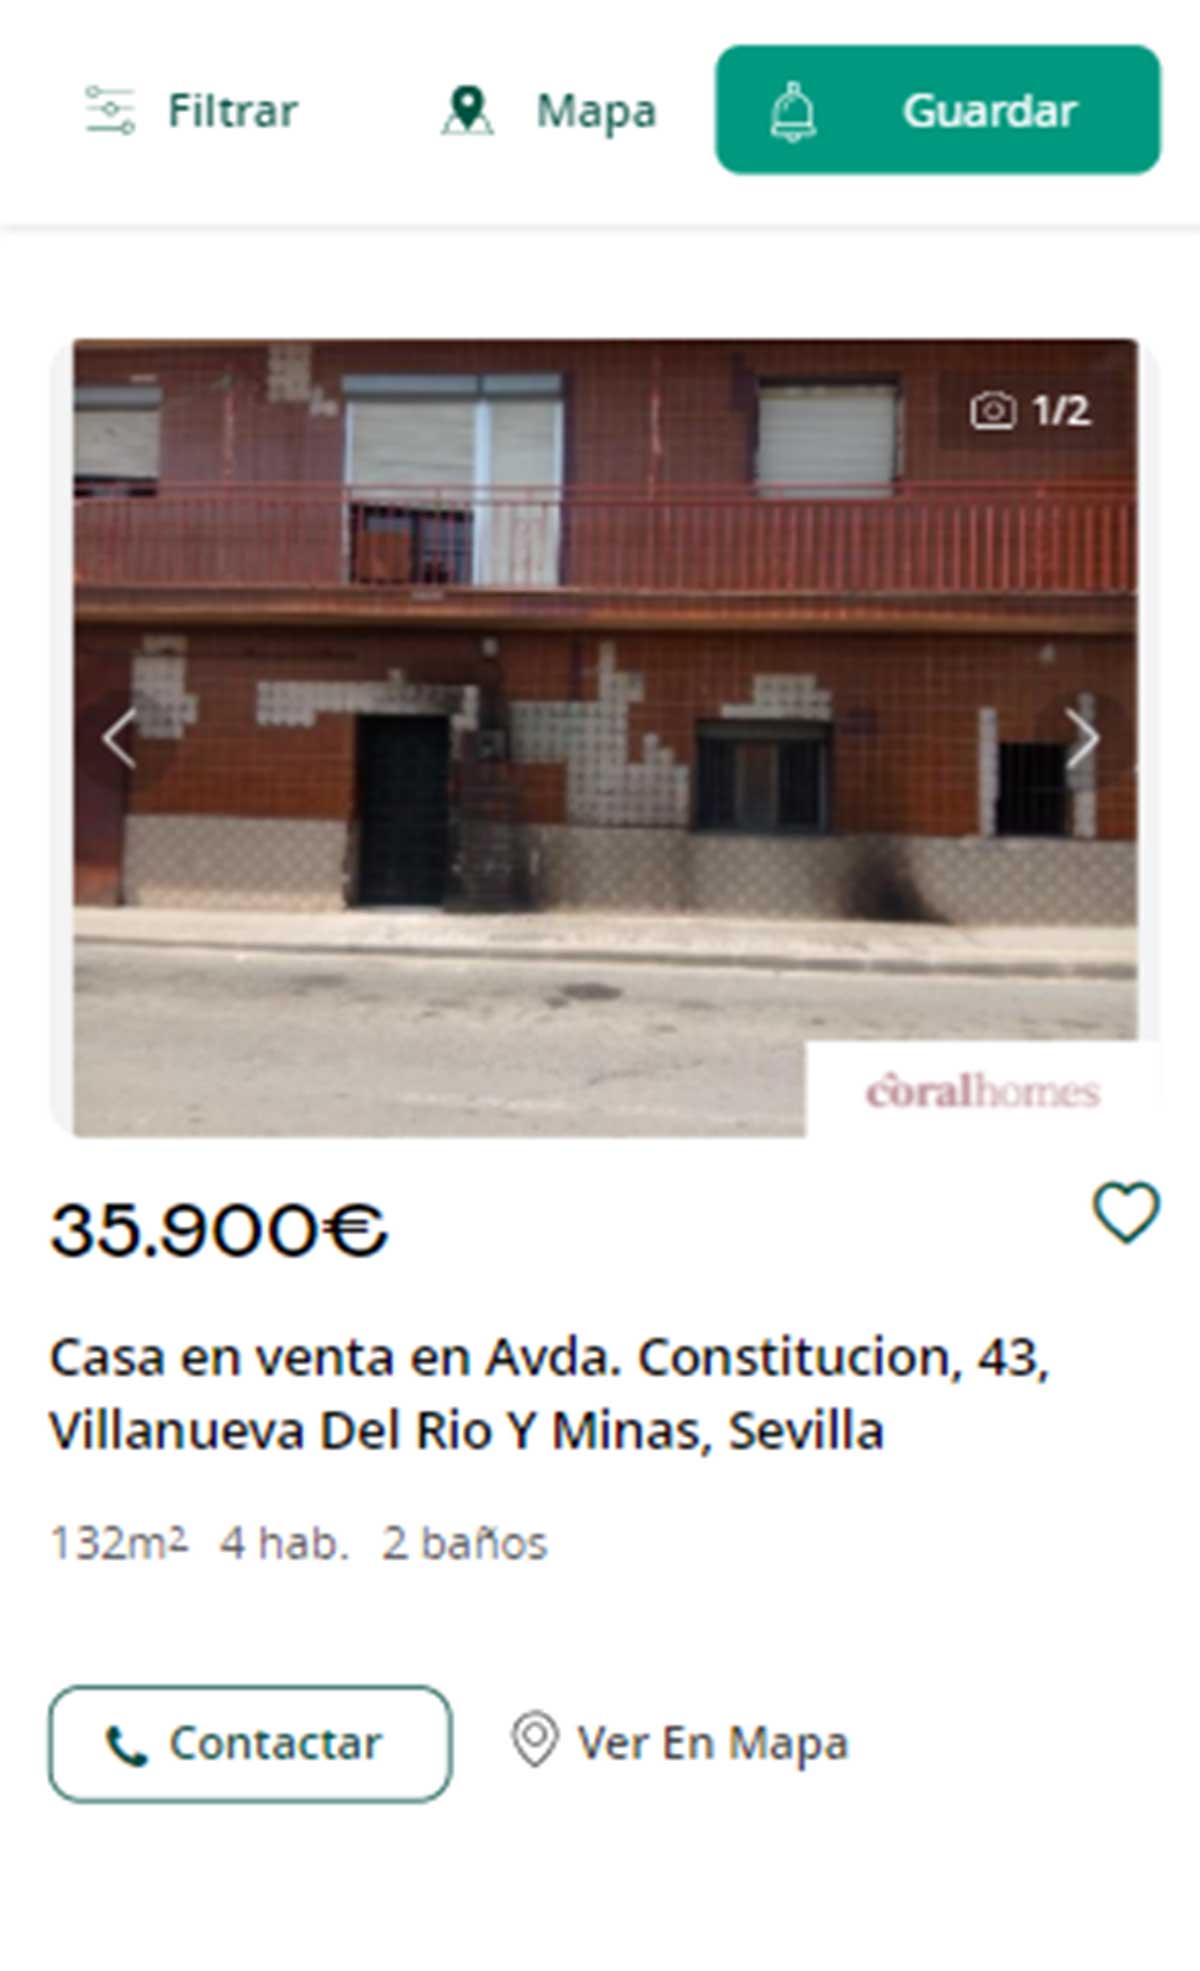 Piso en Sevilla por 35.900 euros